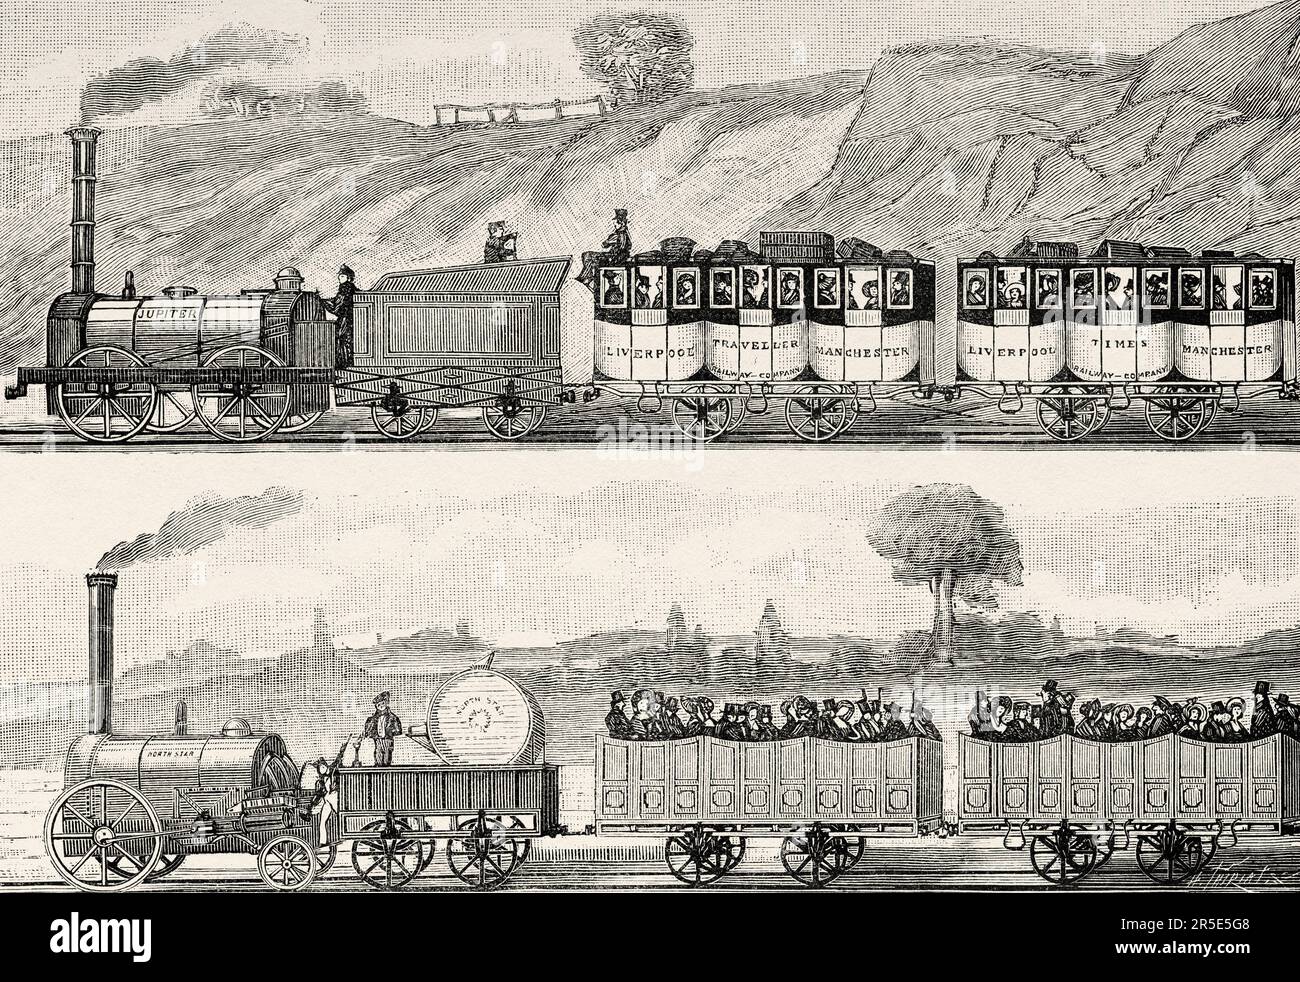 Dampflokomotiven zwischen Liverpool und Manchester 1831, England. Alte Gravur aus dem 19. Jahrhundert aus La Nature 1887 Stockfoto